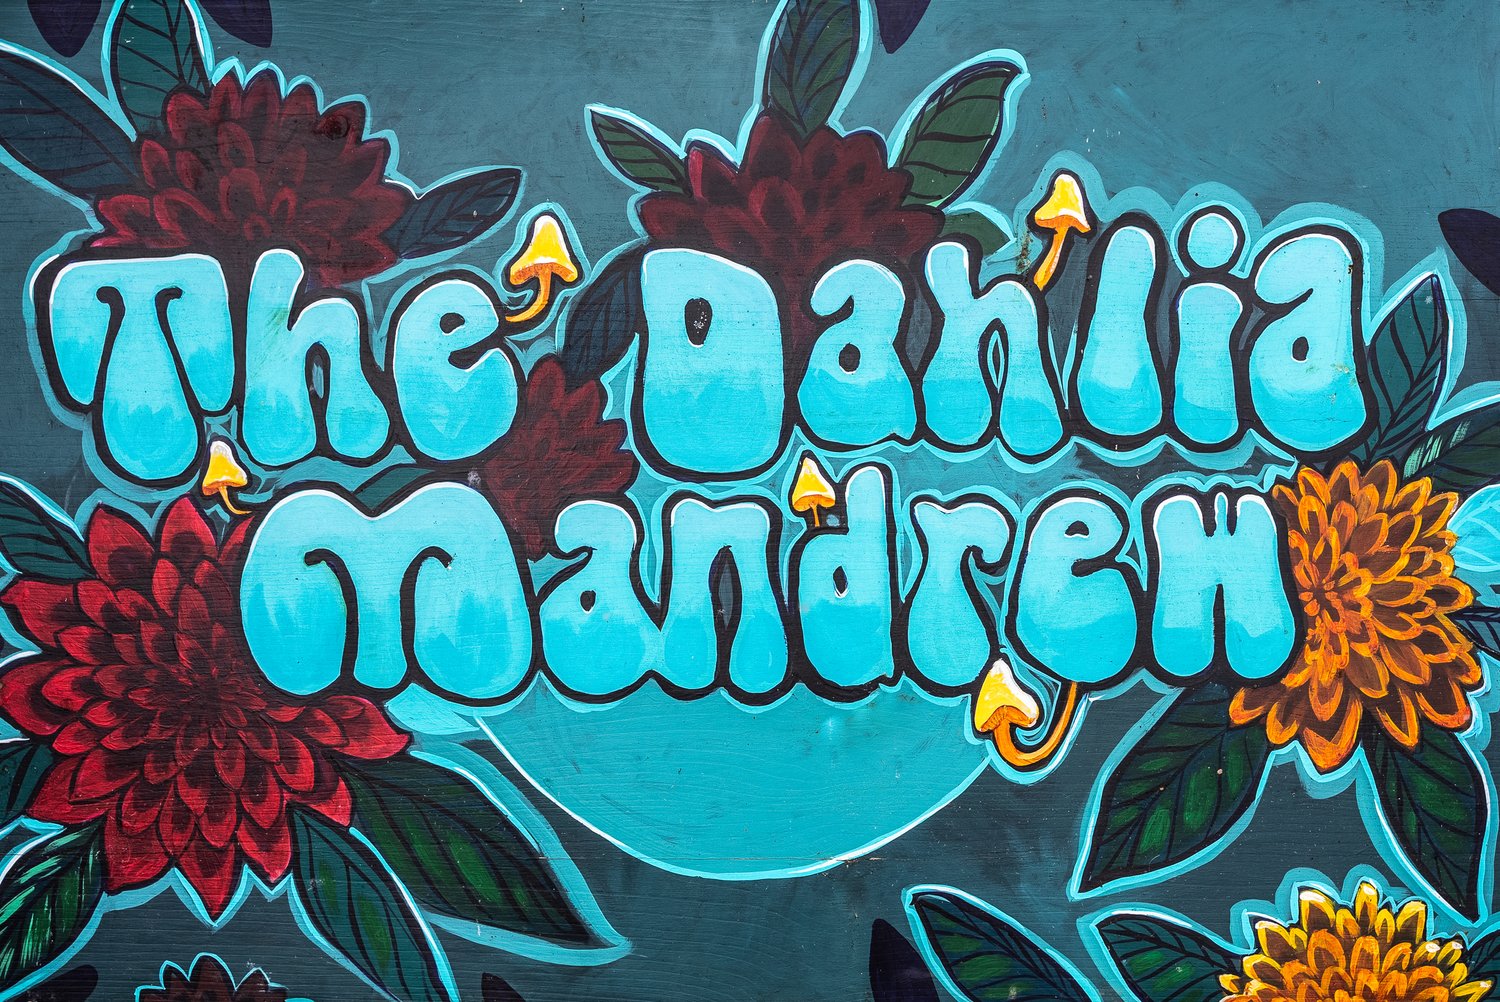 The Dahlia Mandrew